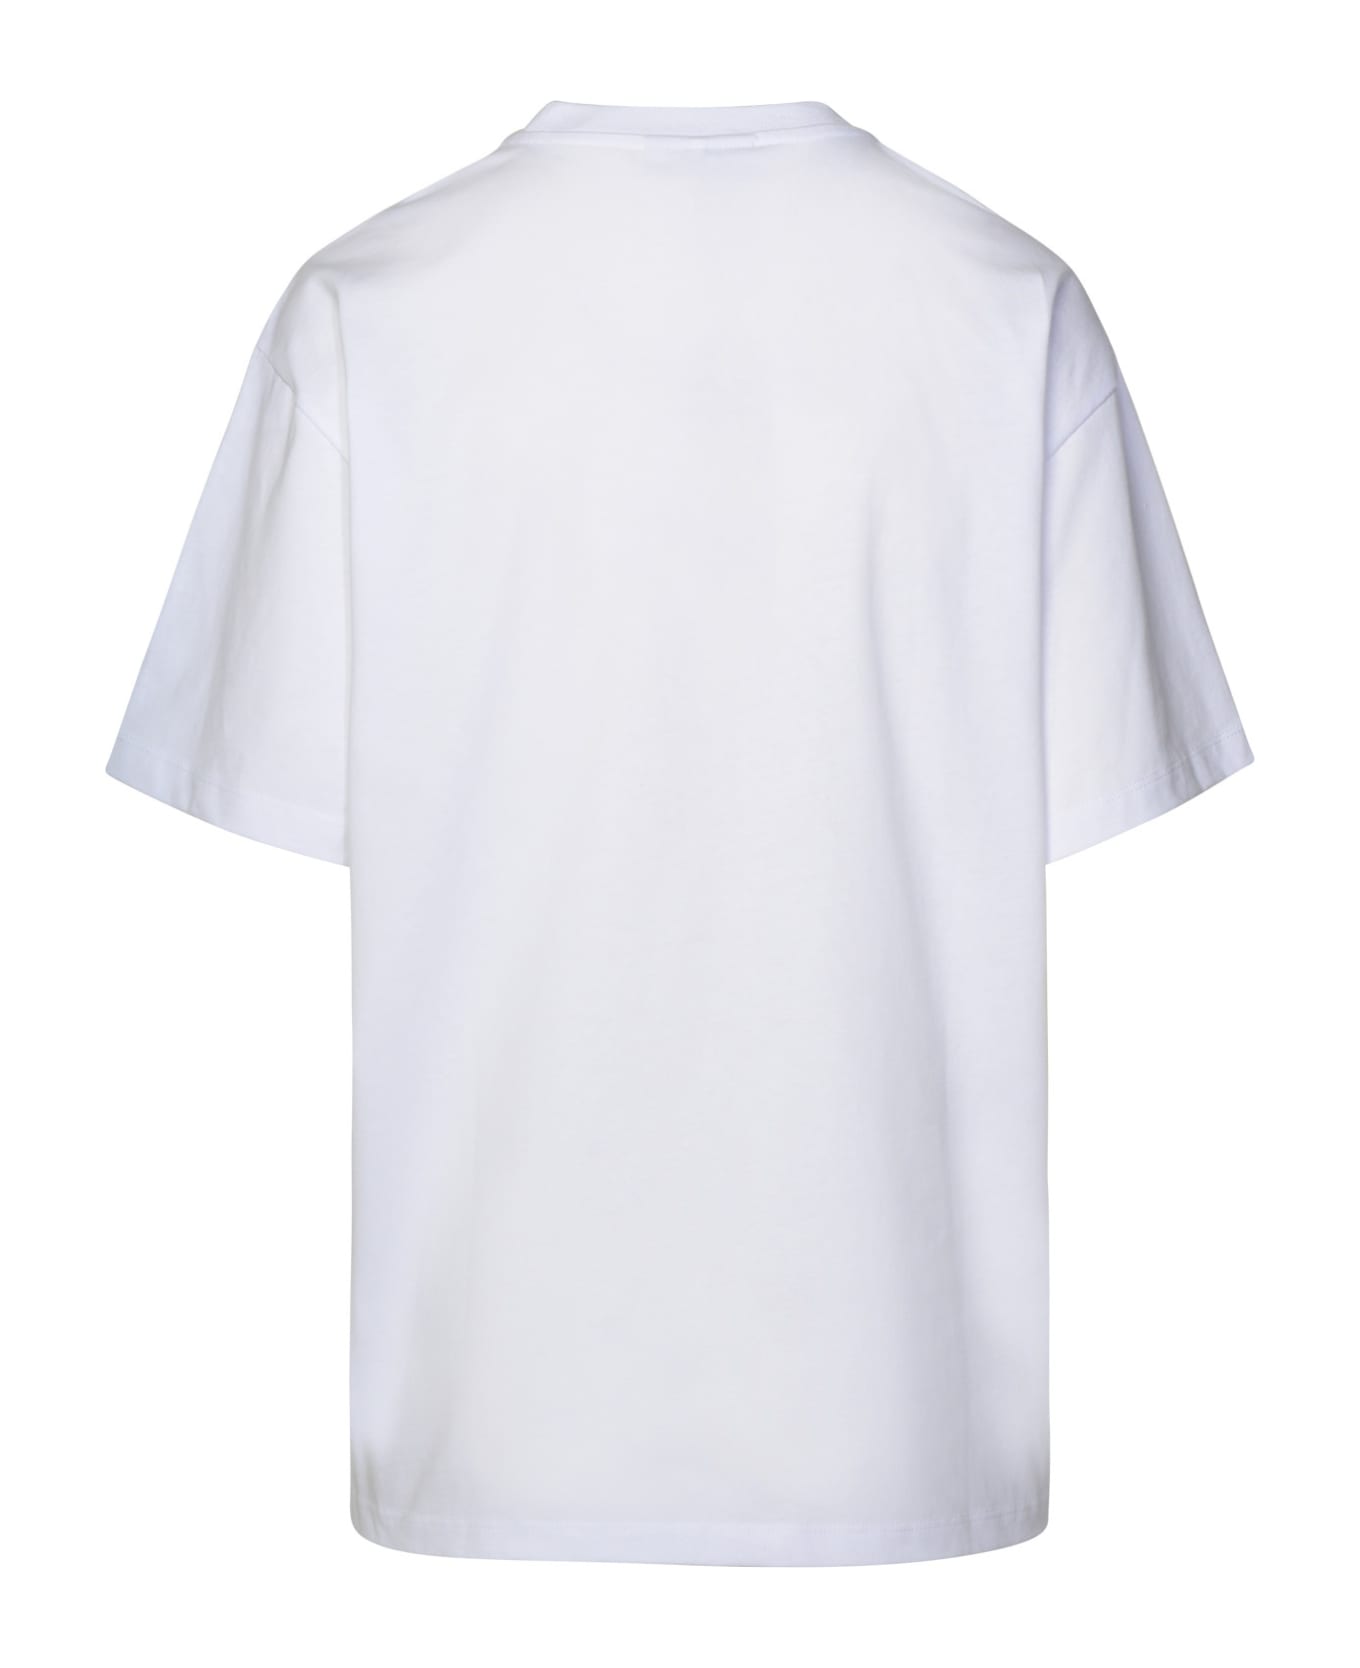 Ganni White Cotton T-shirt - BRIGHTWHITE